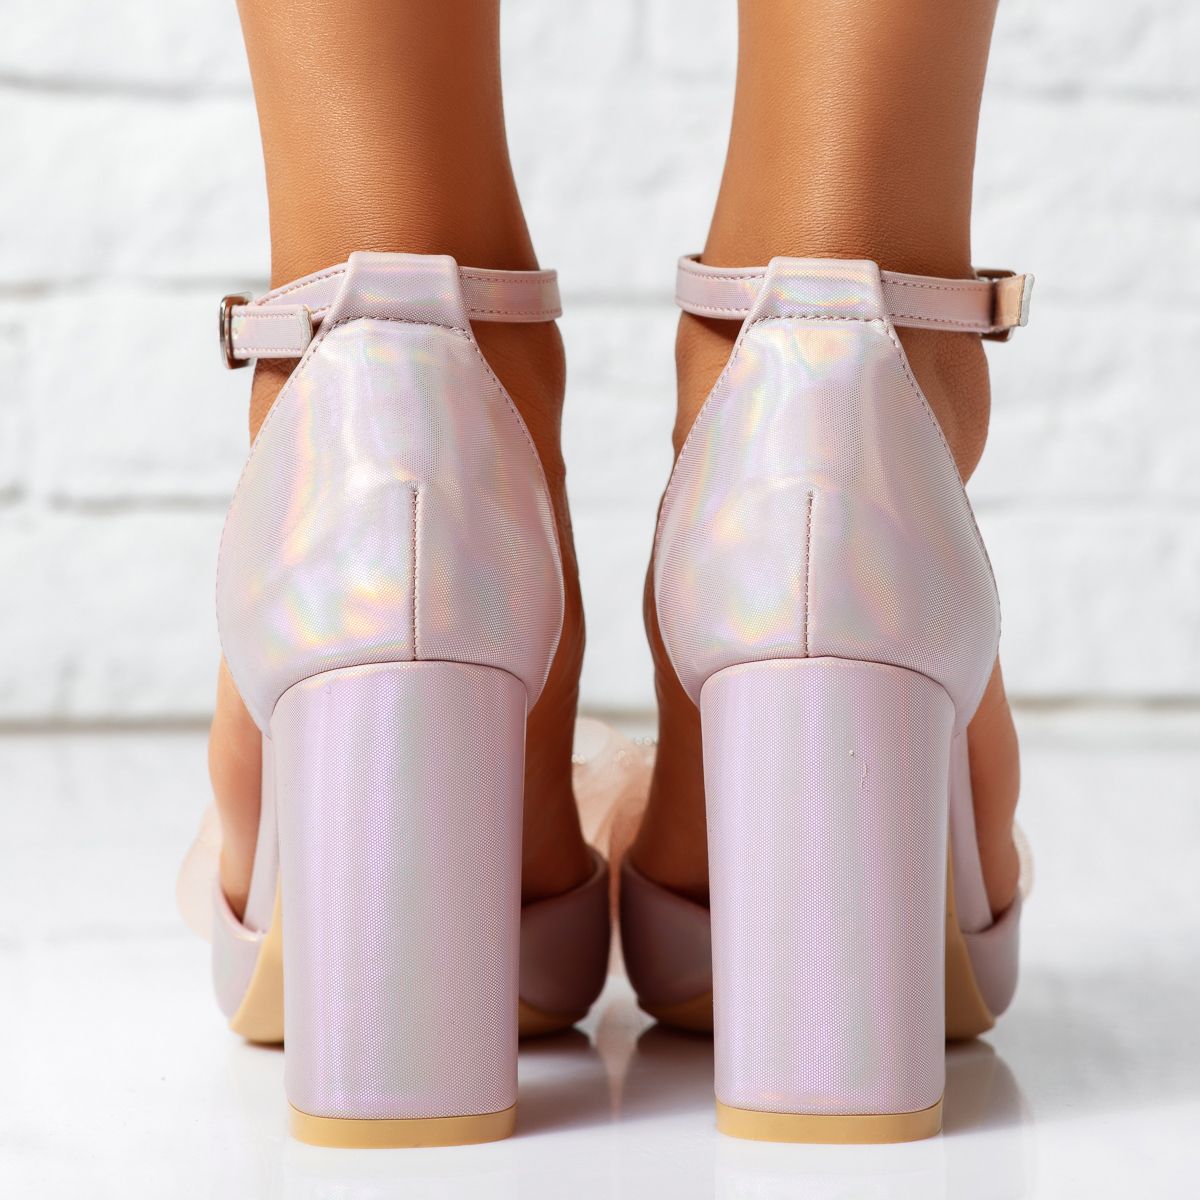 Pantofi Dama cu Toc Misty2 Roz/Aurii #14226